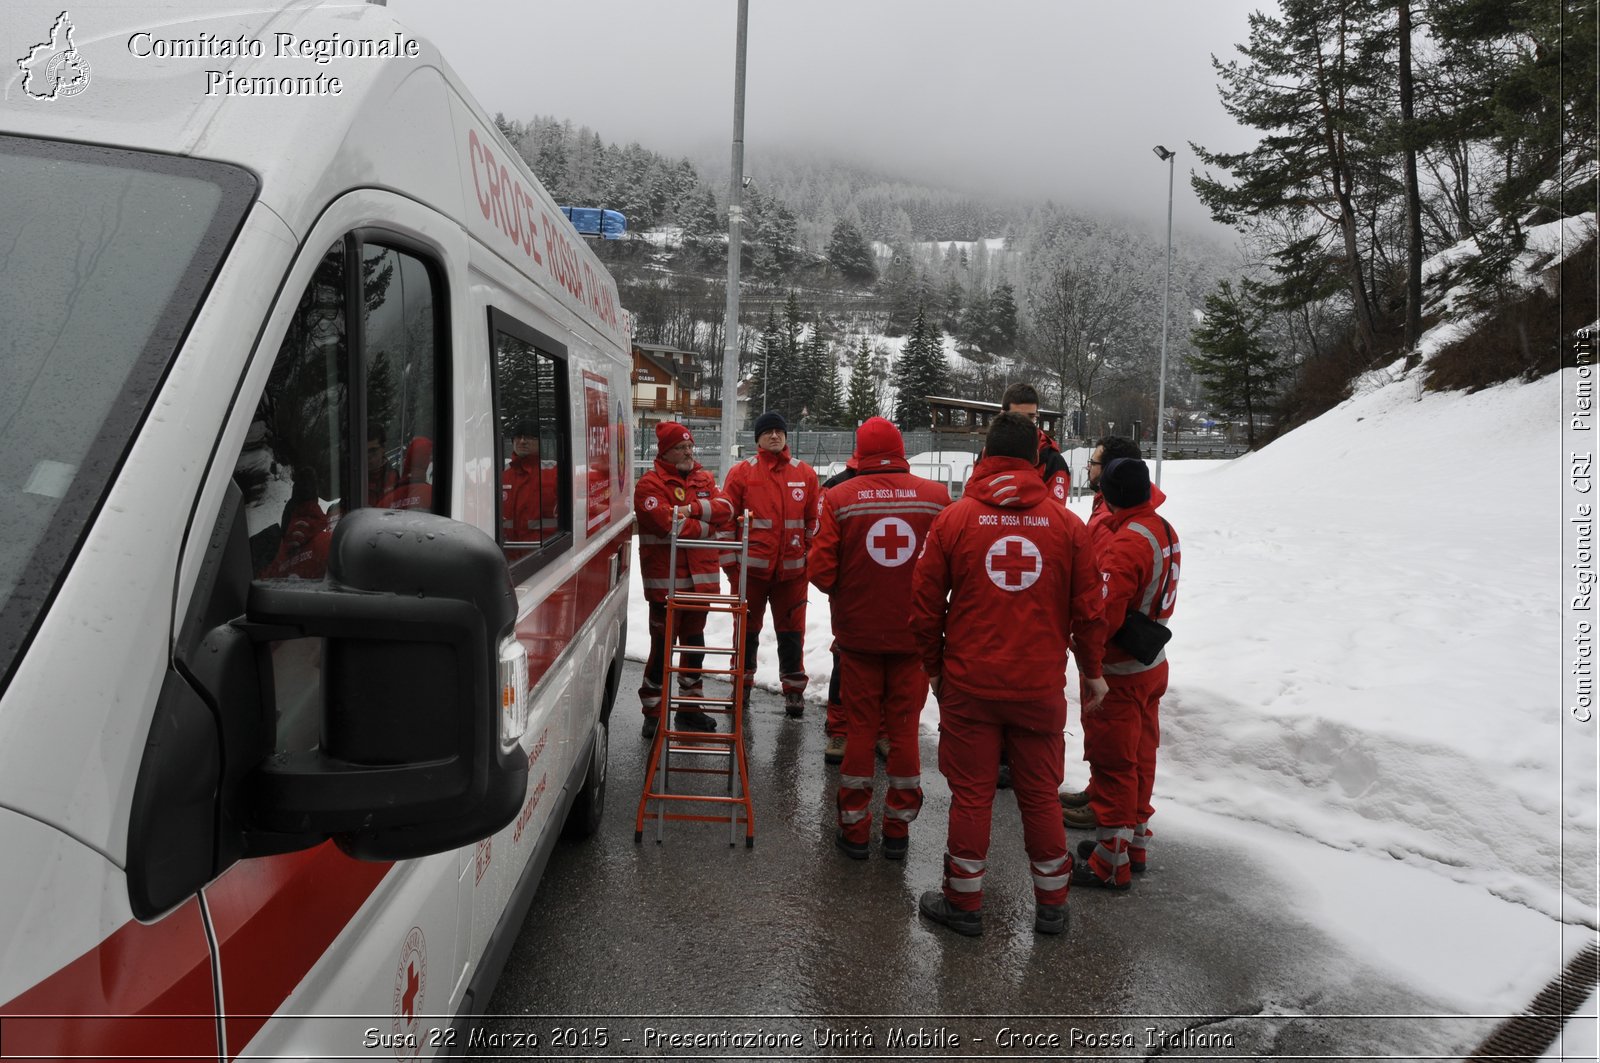 Susa 22 Marzo 2015 - Presentazione Unit Mobile - Croce Rossa Italiana- Comitato Regionale del Piemonte